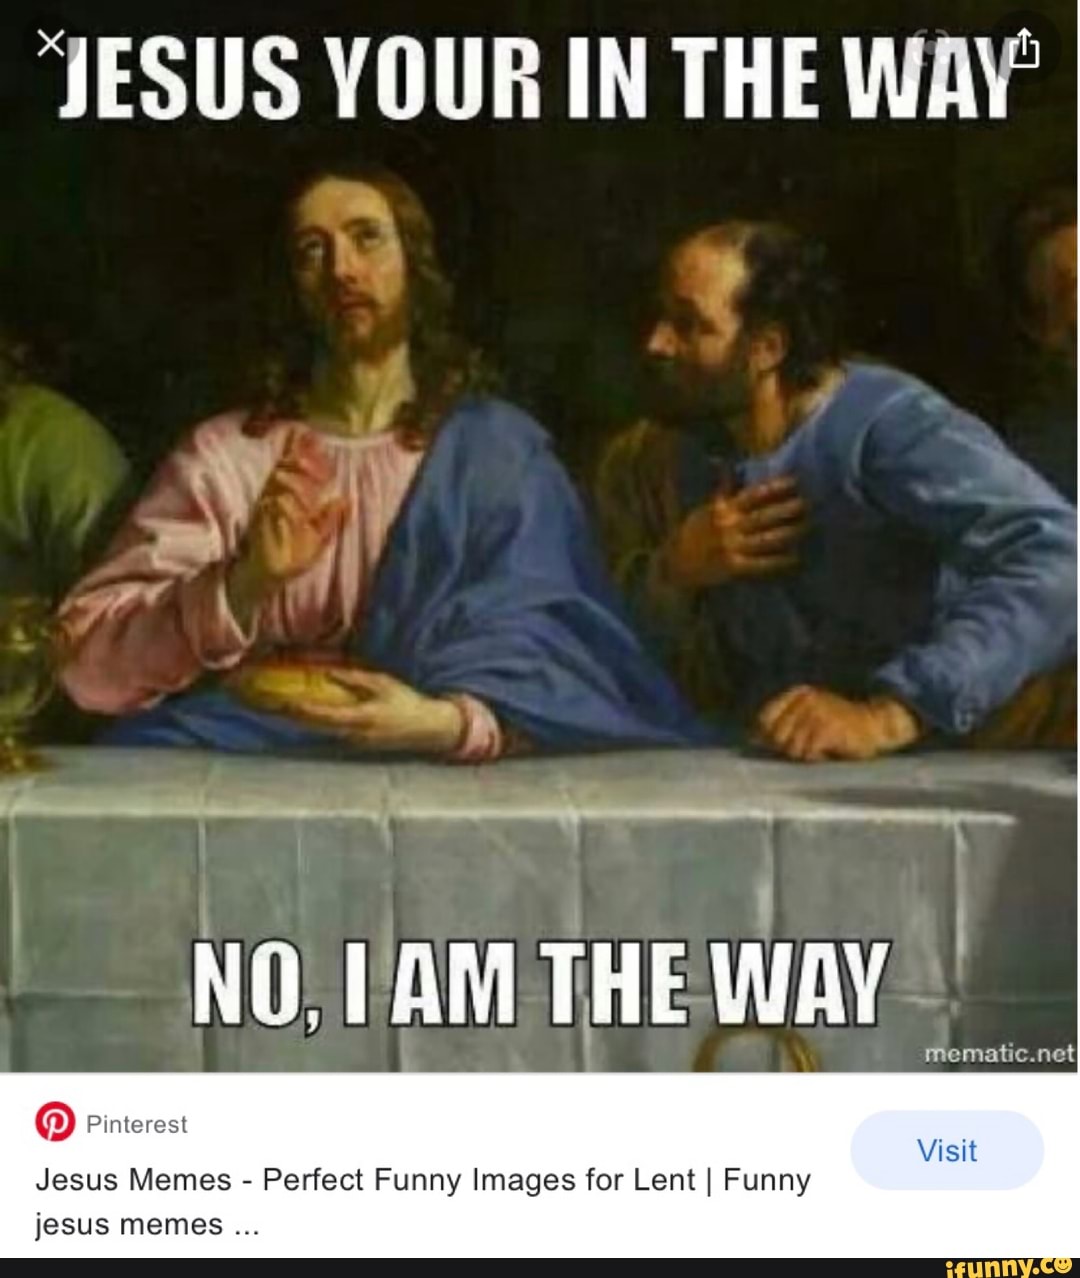 Анекдоты Про Иисуса